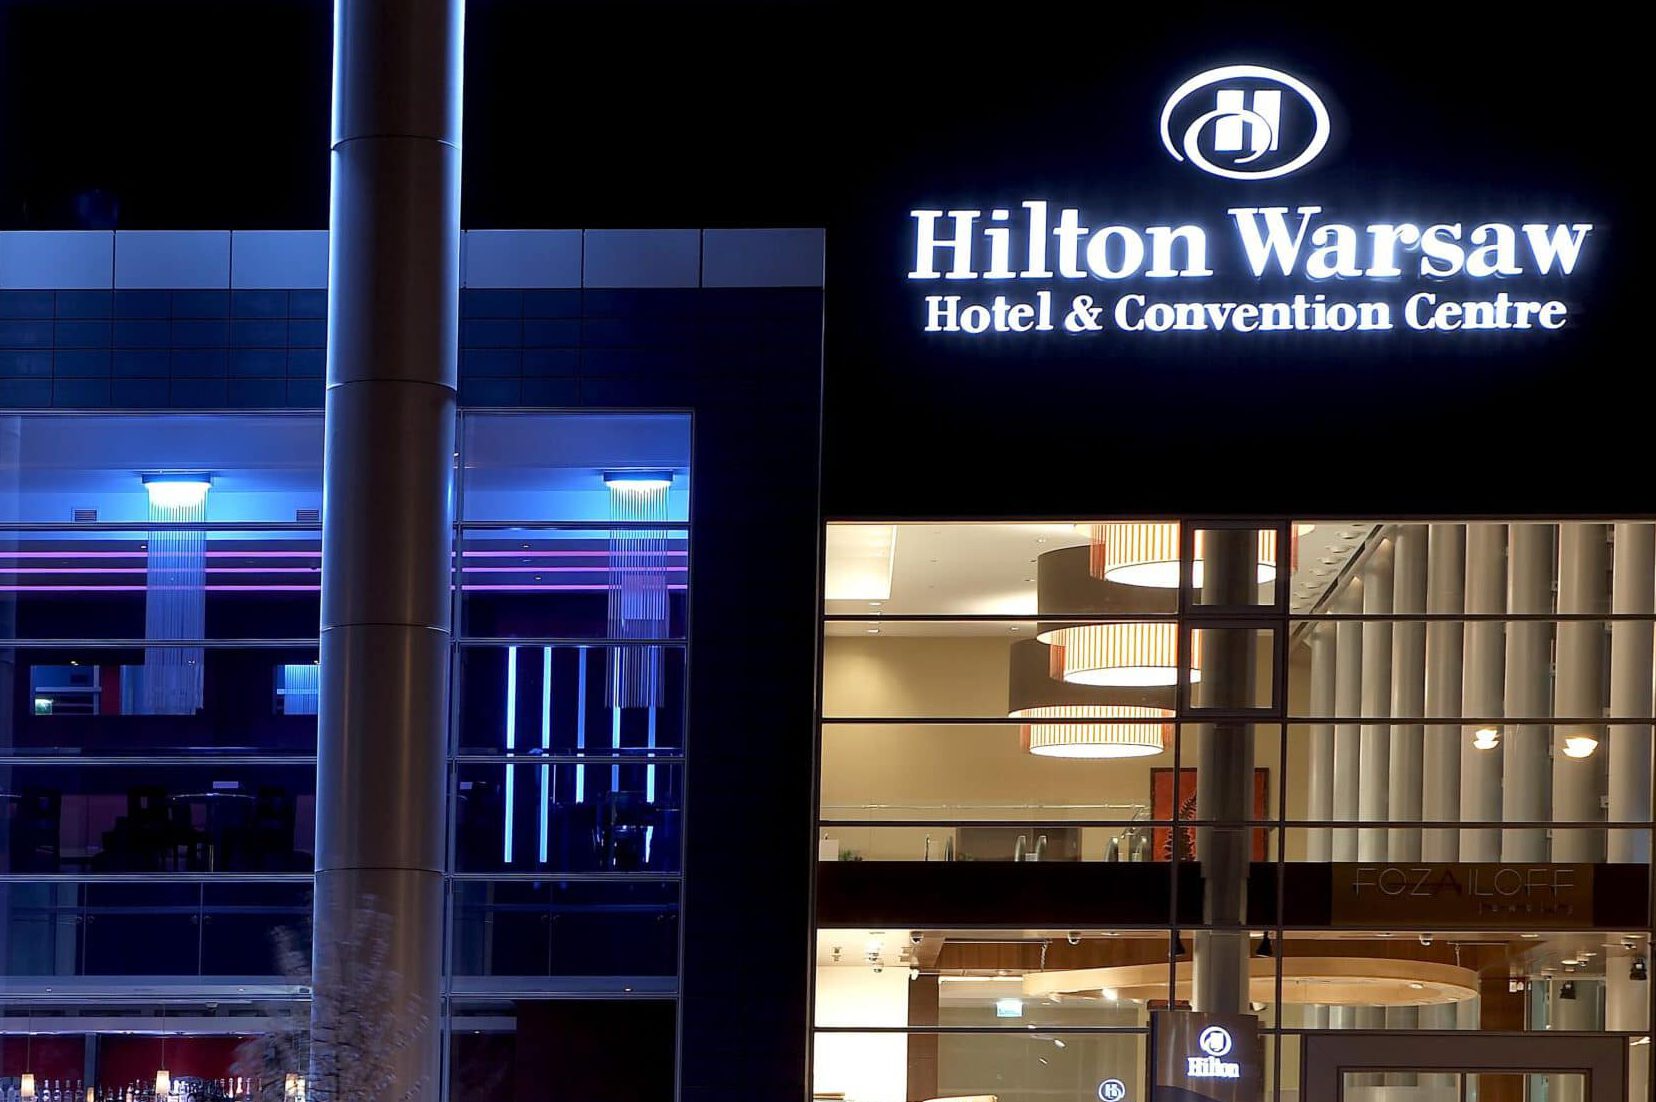 HILTON WARSAW HOTEL